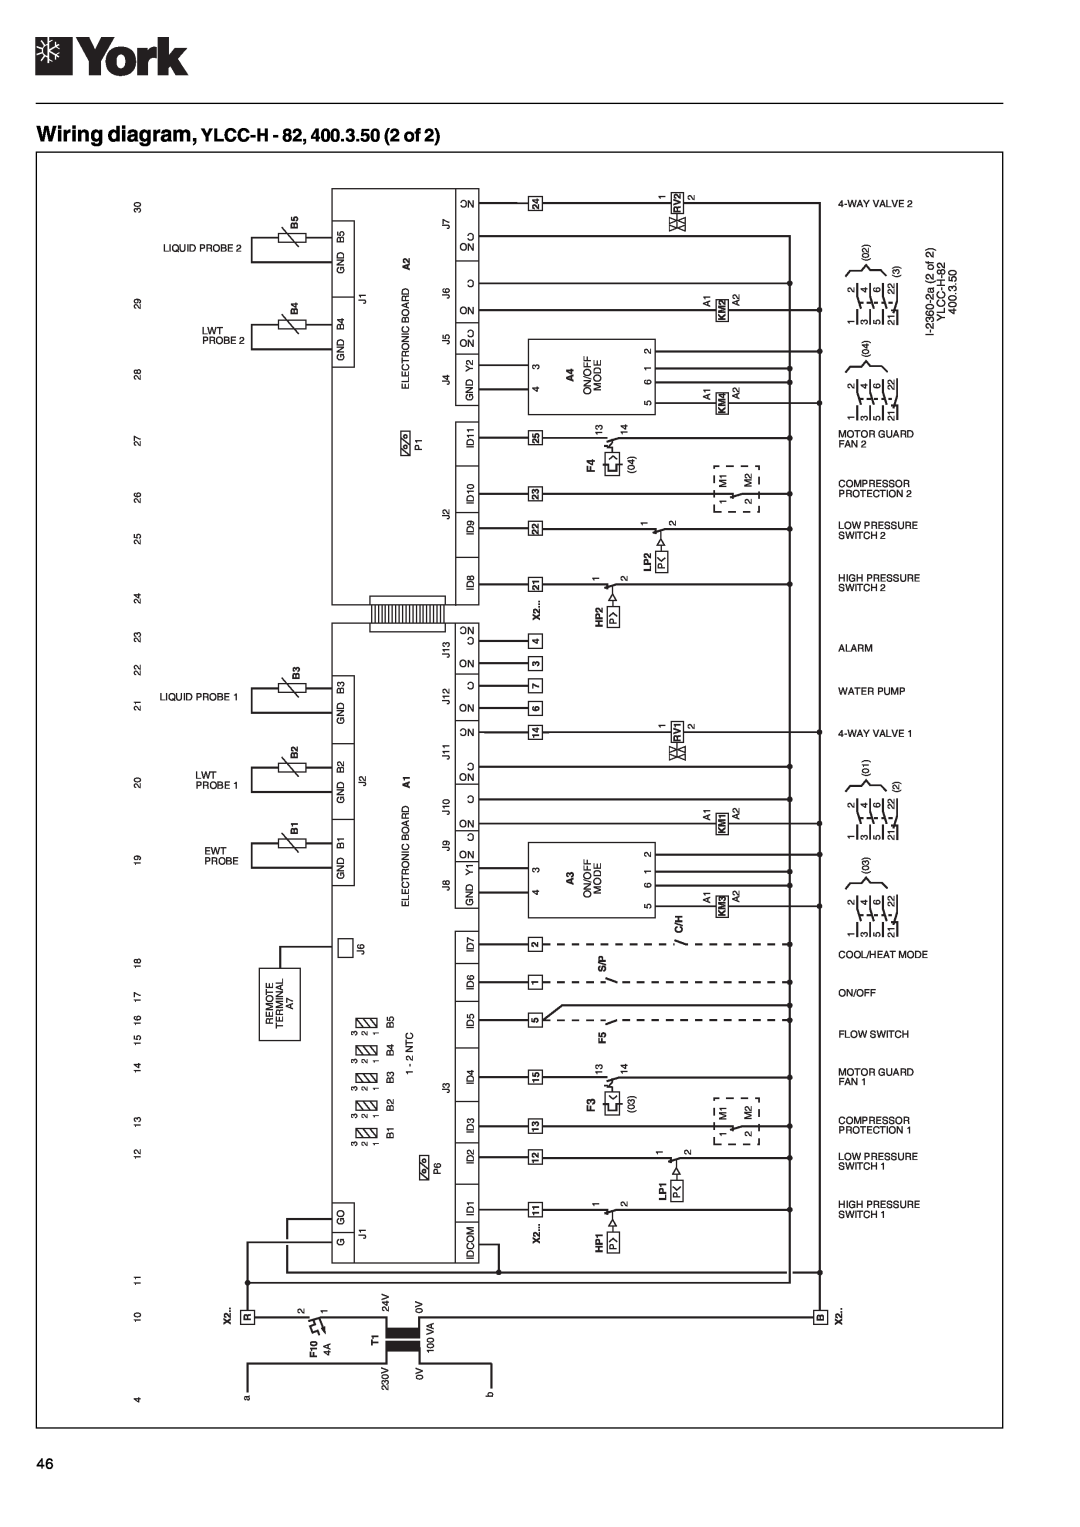 York 122, YLCC 42/62/82/102/112, YLCC-h, 152 manual Wiring diagram, YLCC-H- 82, 400.3.50 2 of 